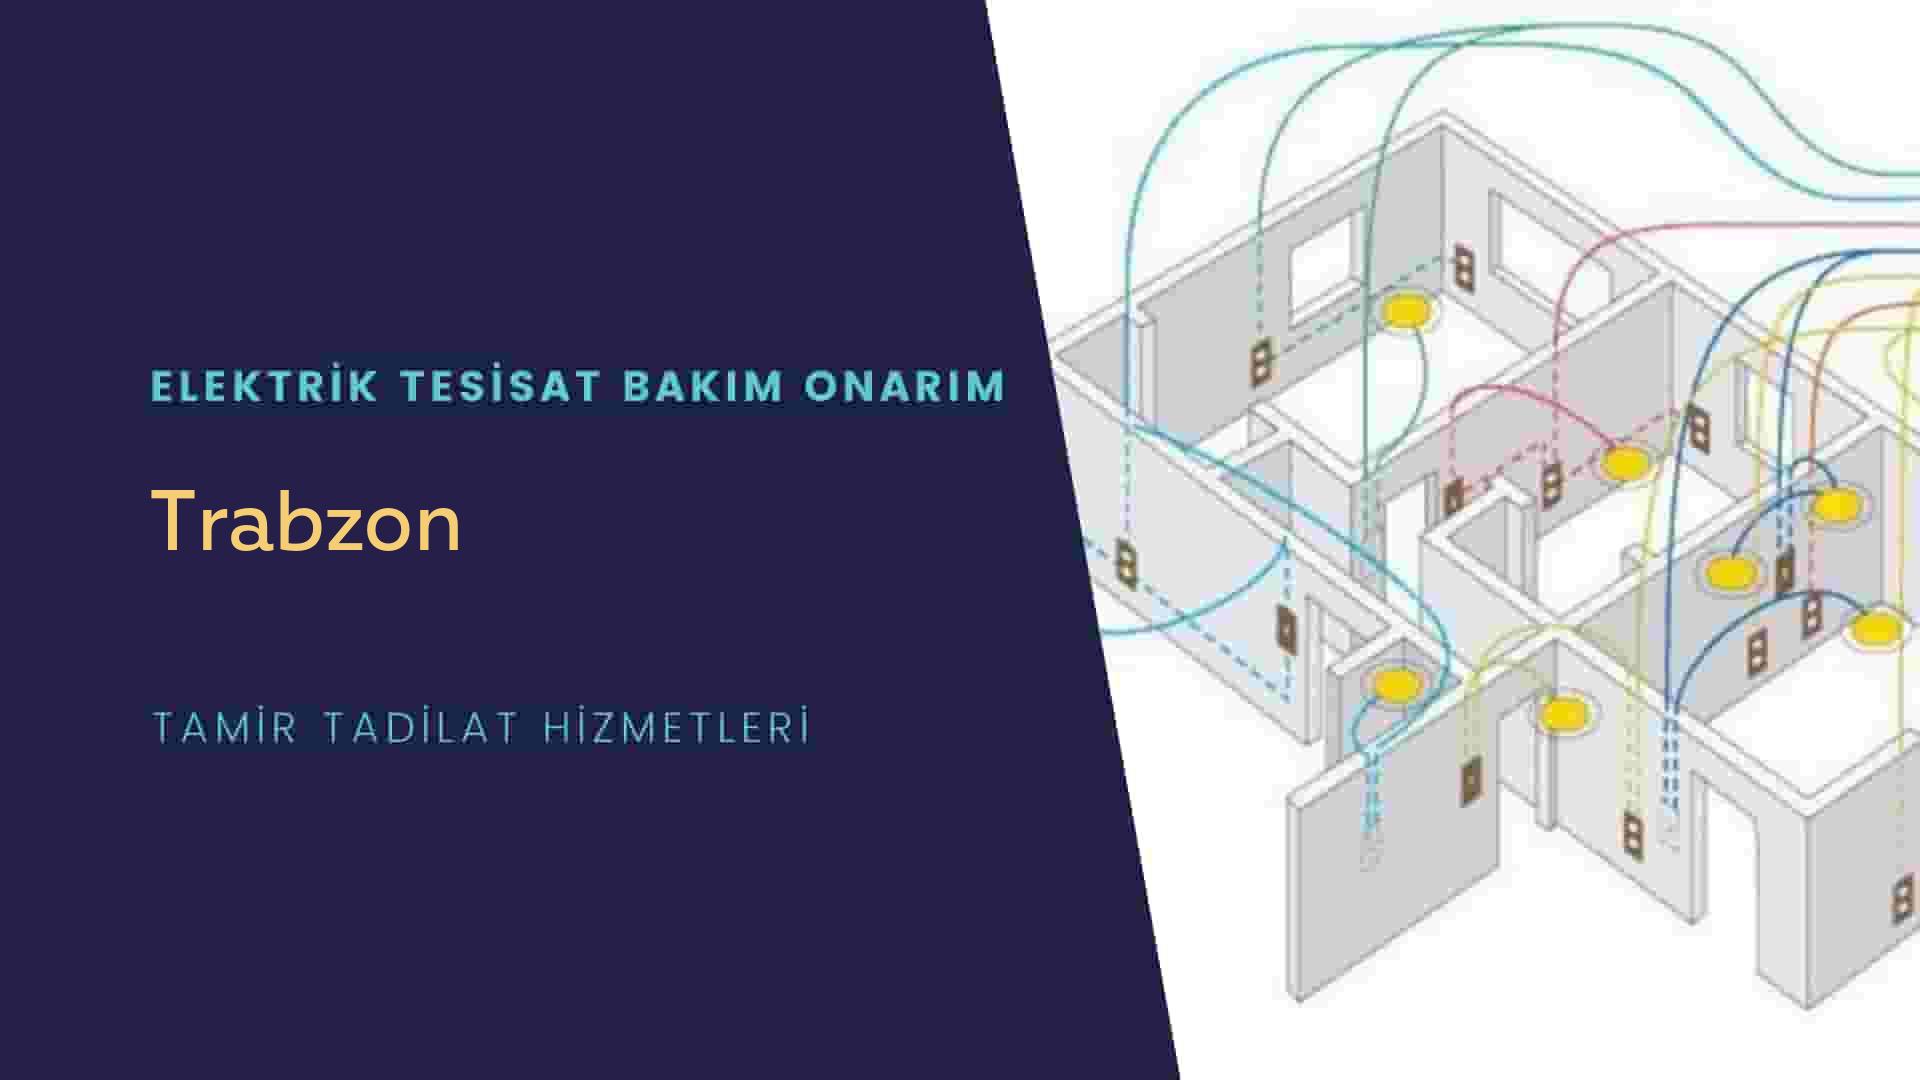 Trabzon'da elektrik tesisatı ustalarımı arıyorsunuz doğru adrestenizi Trabzon elektrik tesisatı ustalarımız 7/24 sizlere hizmet vermekten mutluluk duyar.